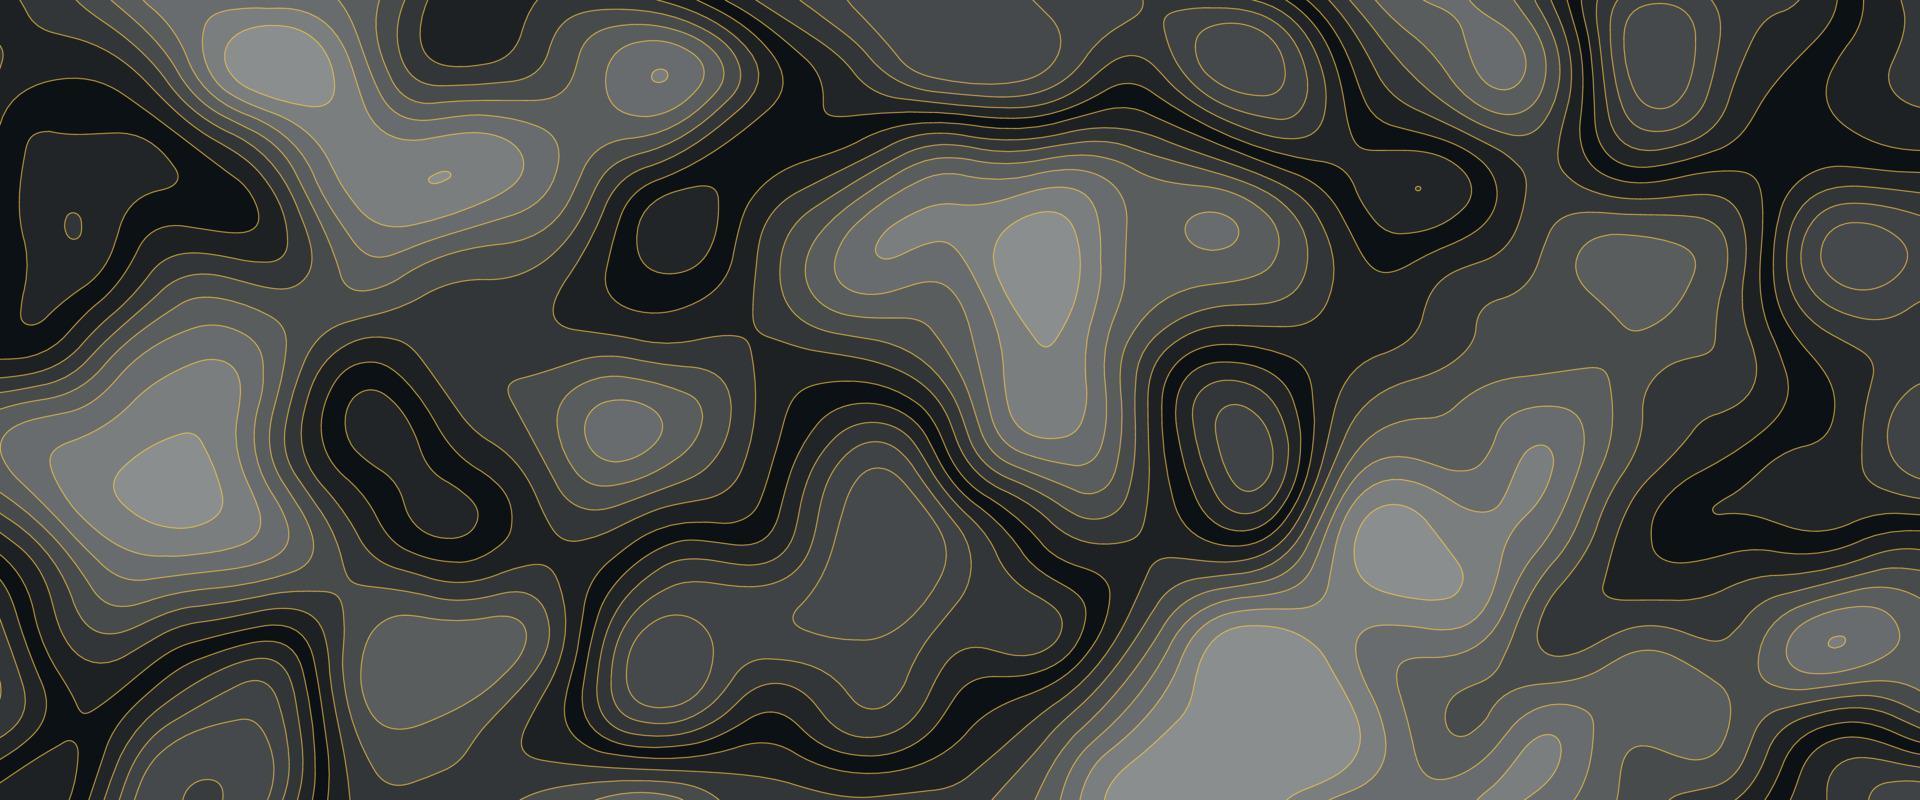 schwarzer papierschnitthintergrund. abstrakte realistische Papierschnittdekoration mit gewellten Schichten. Cover-Layout-Vorlage. Materialdesign-Konzept. minimalistisches Design für Geschäftspräsentationen, Flyer vektor